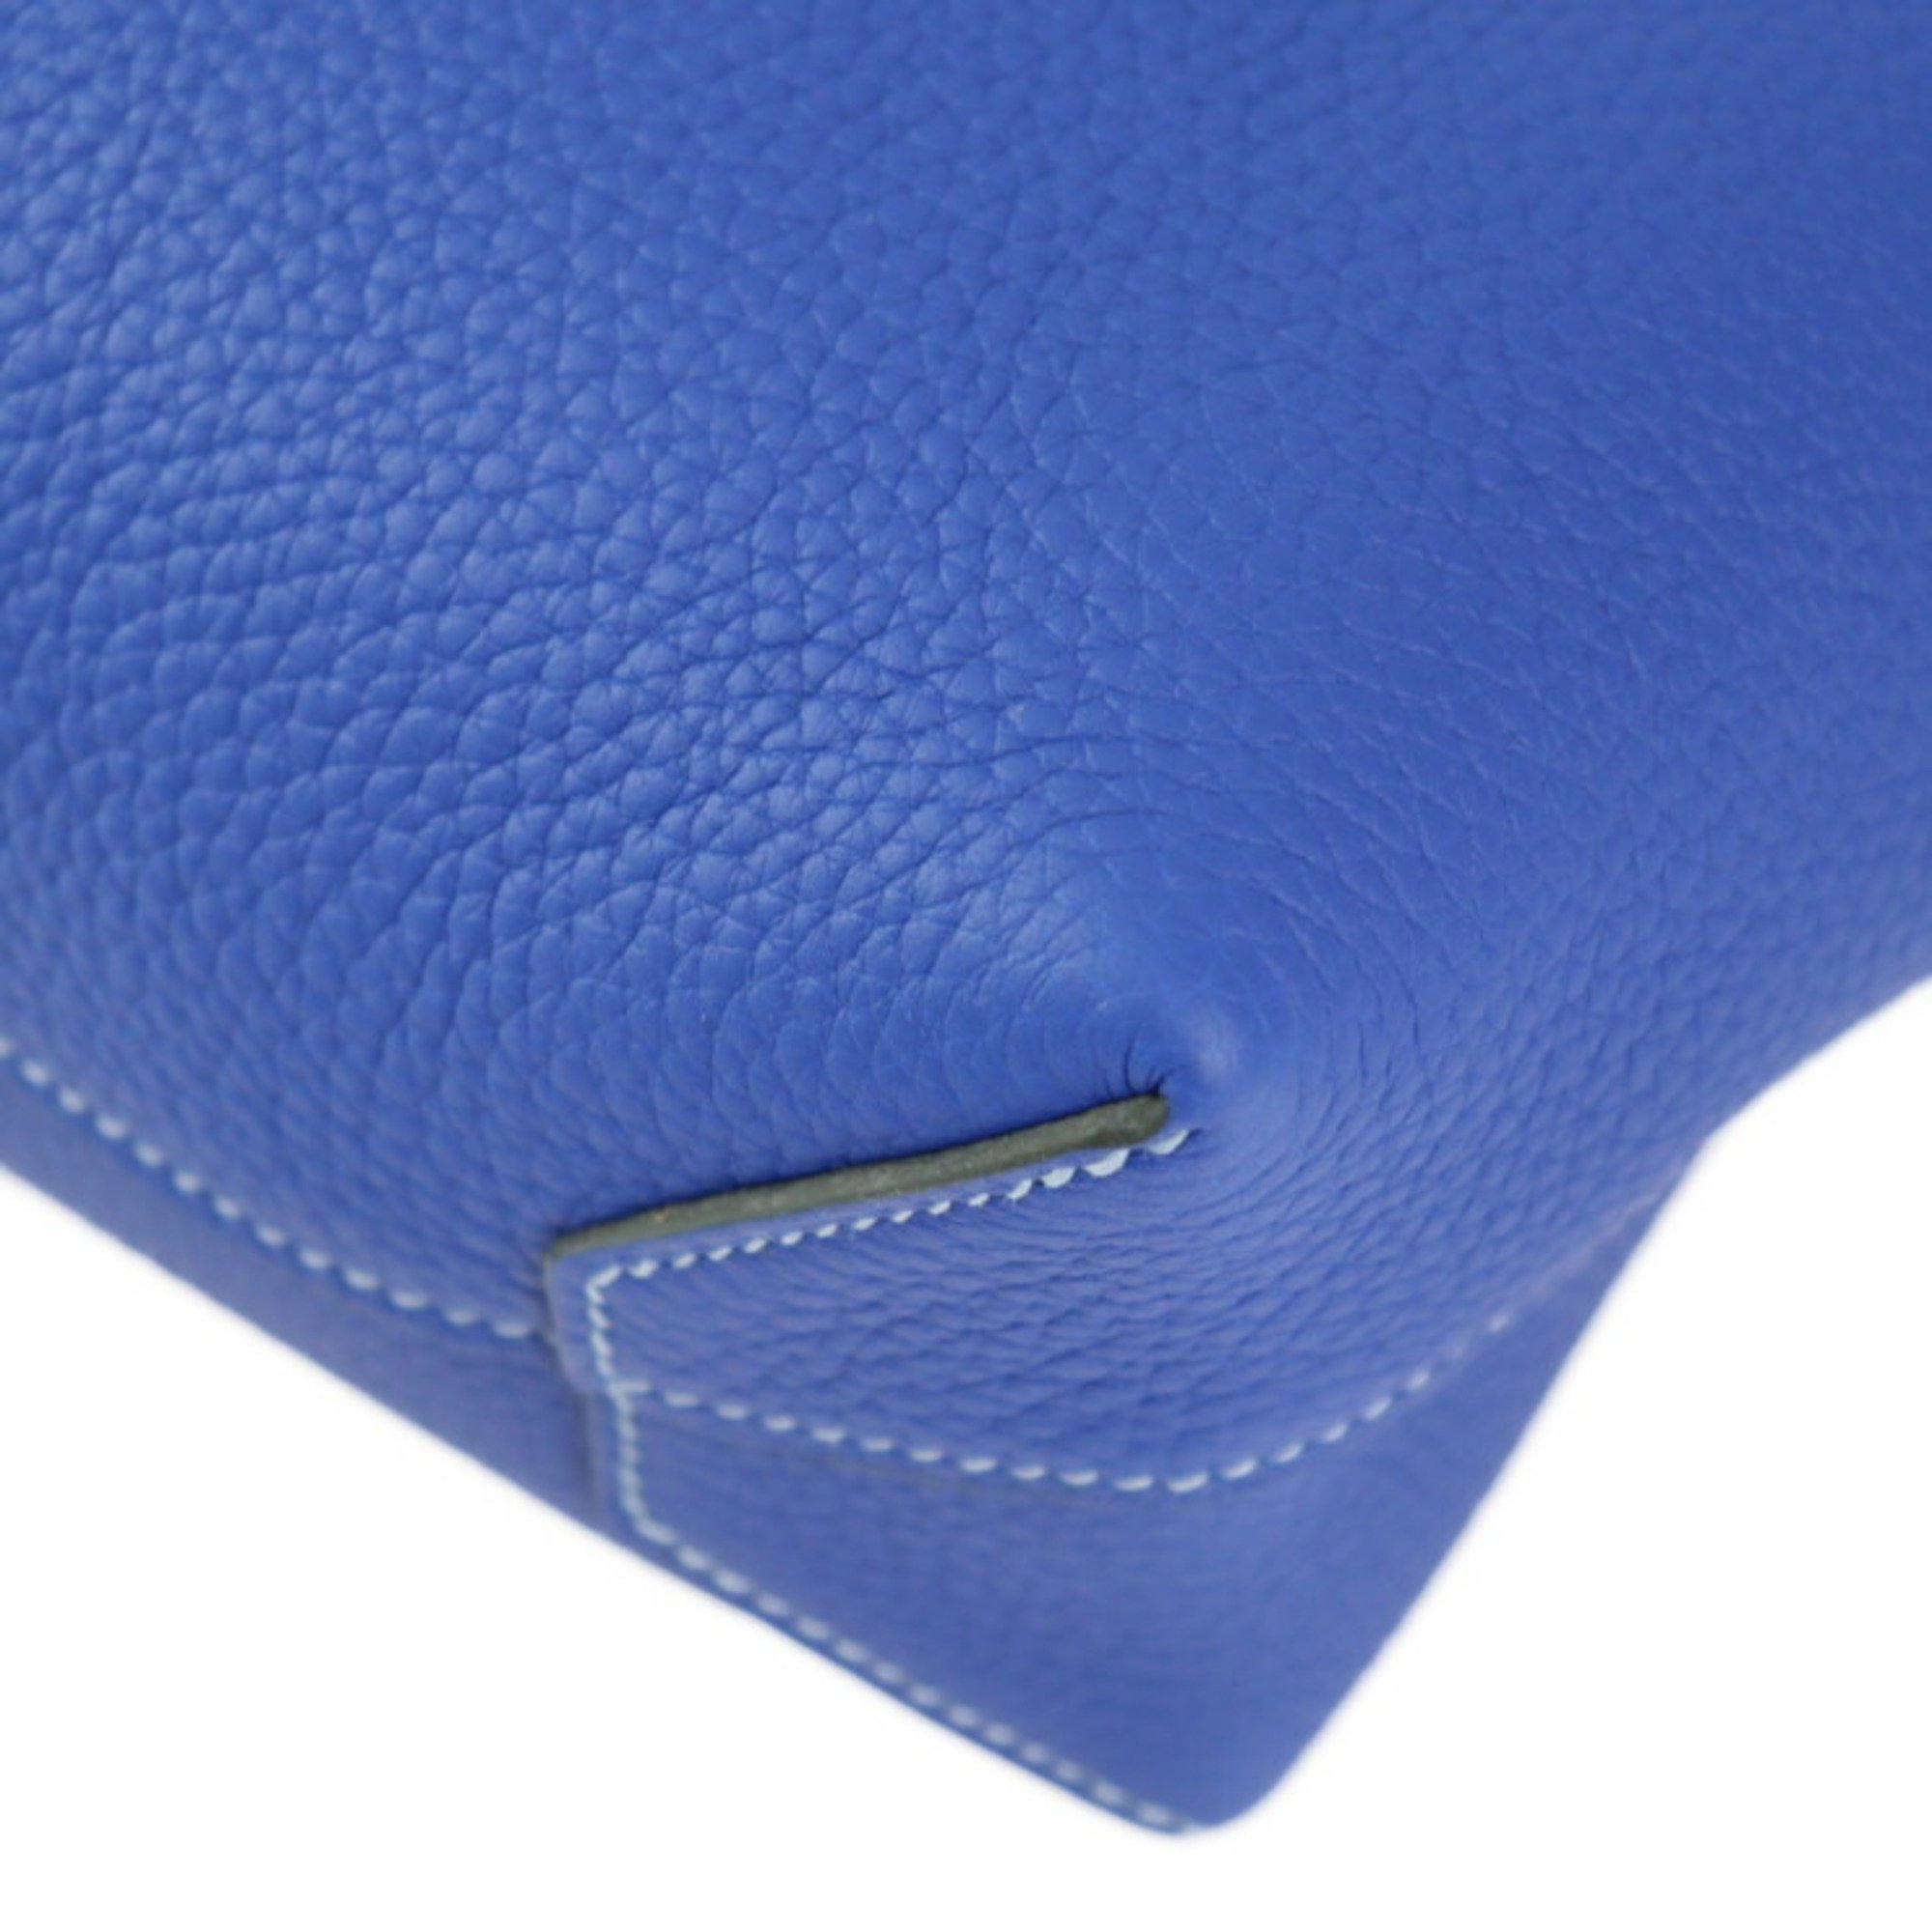 HERMES Cabasserie 31 Tote Bag Taurillon Clemence Royal Blue Mint Shoulder Z engraved